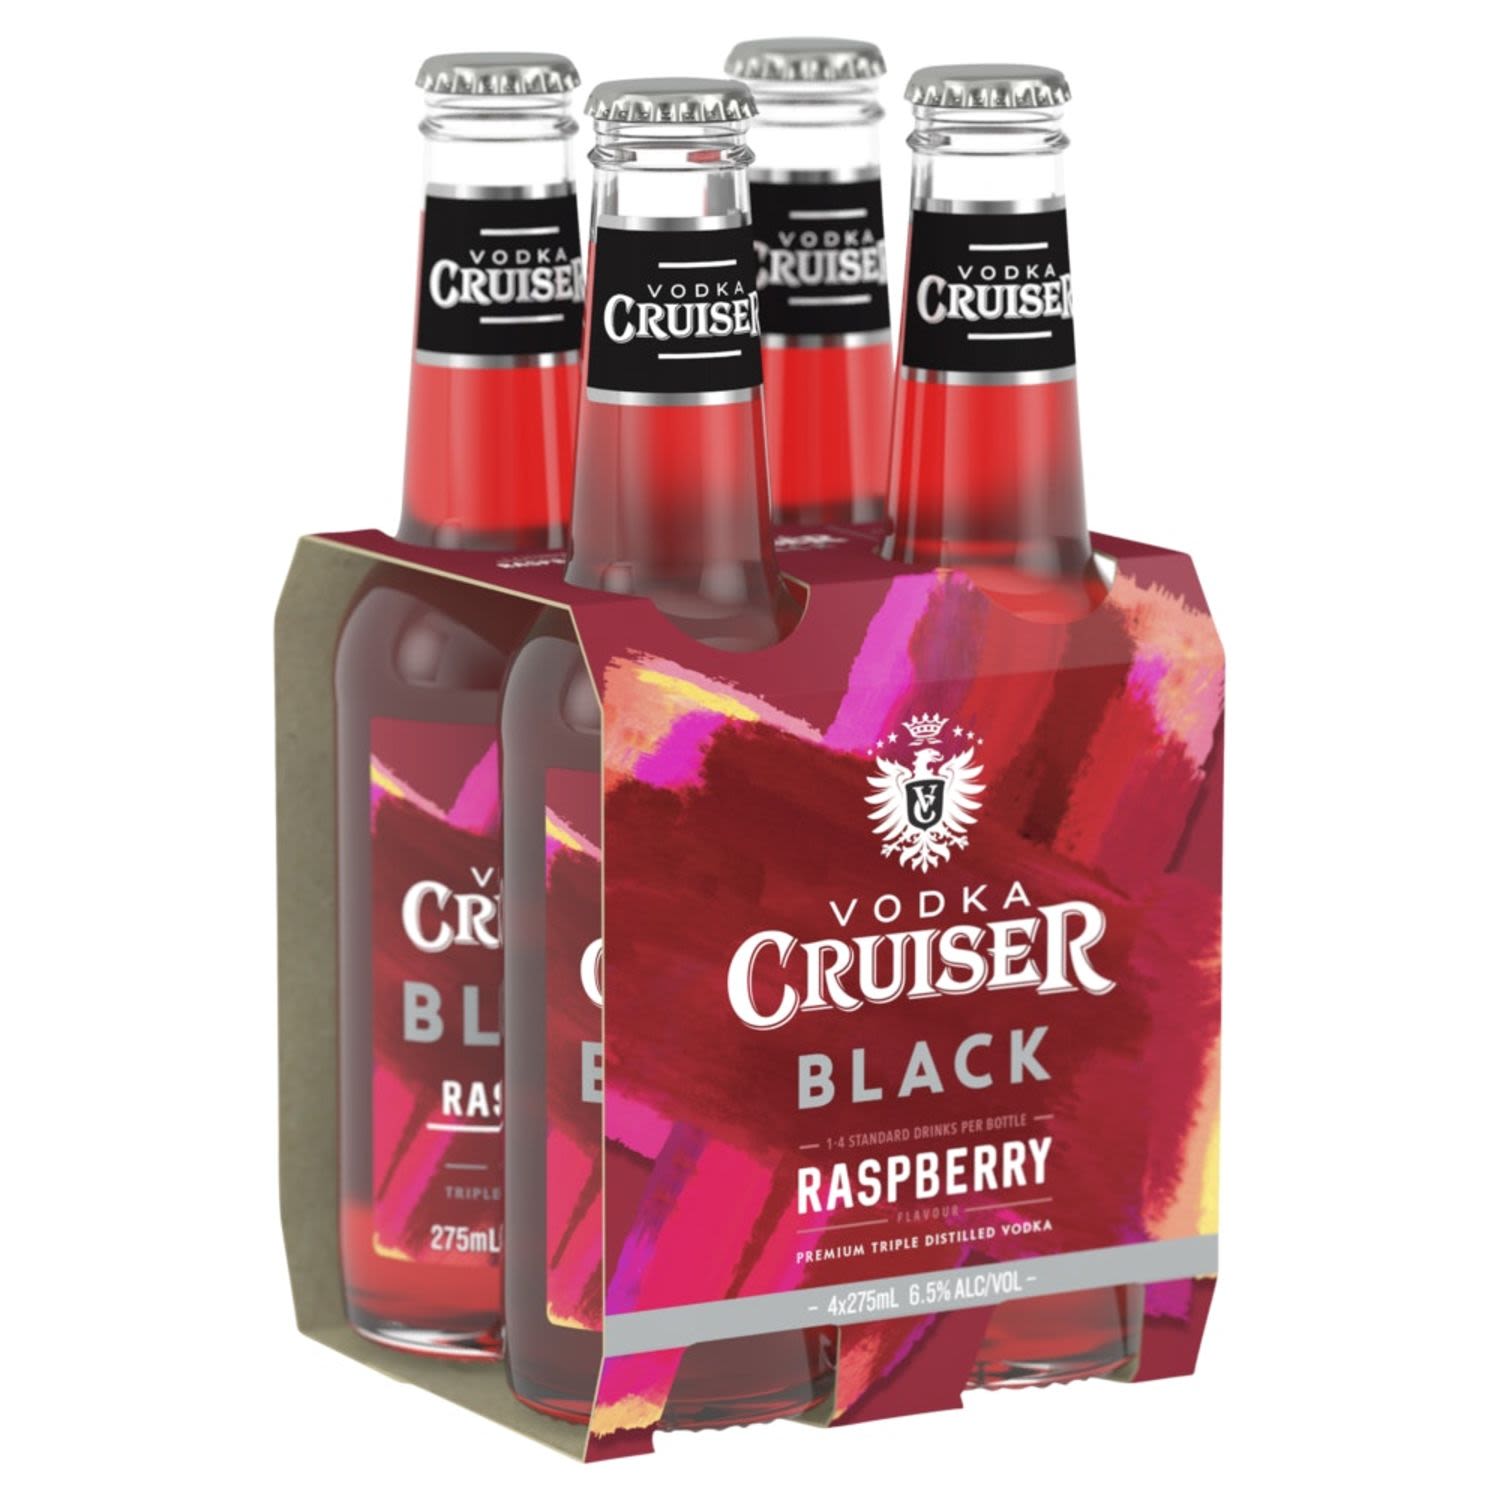 Vodka Cruiser Black Raspberry Bottle 275mL 4 Pack